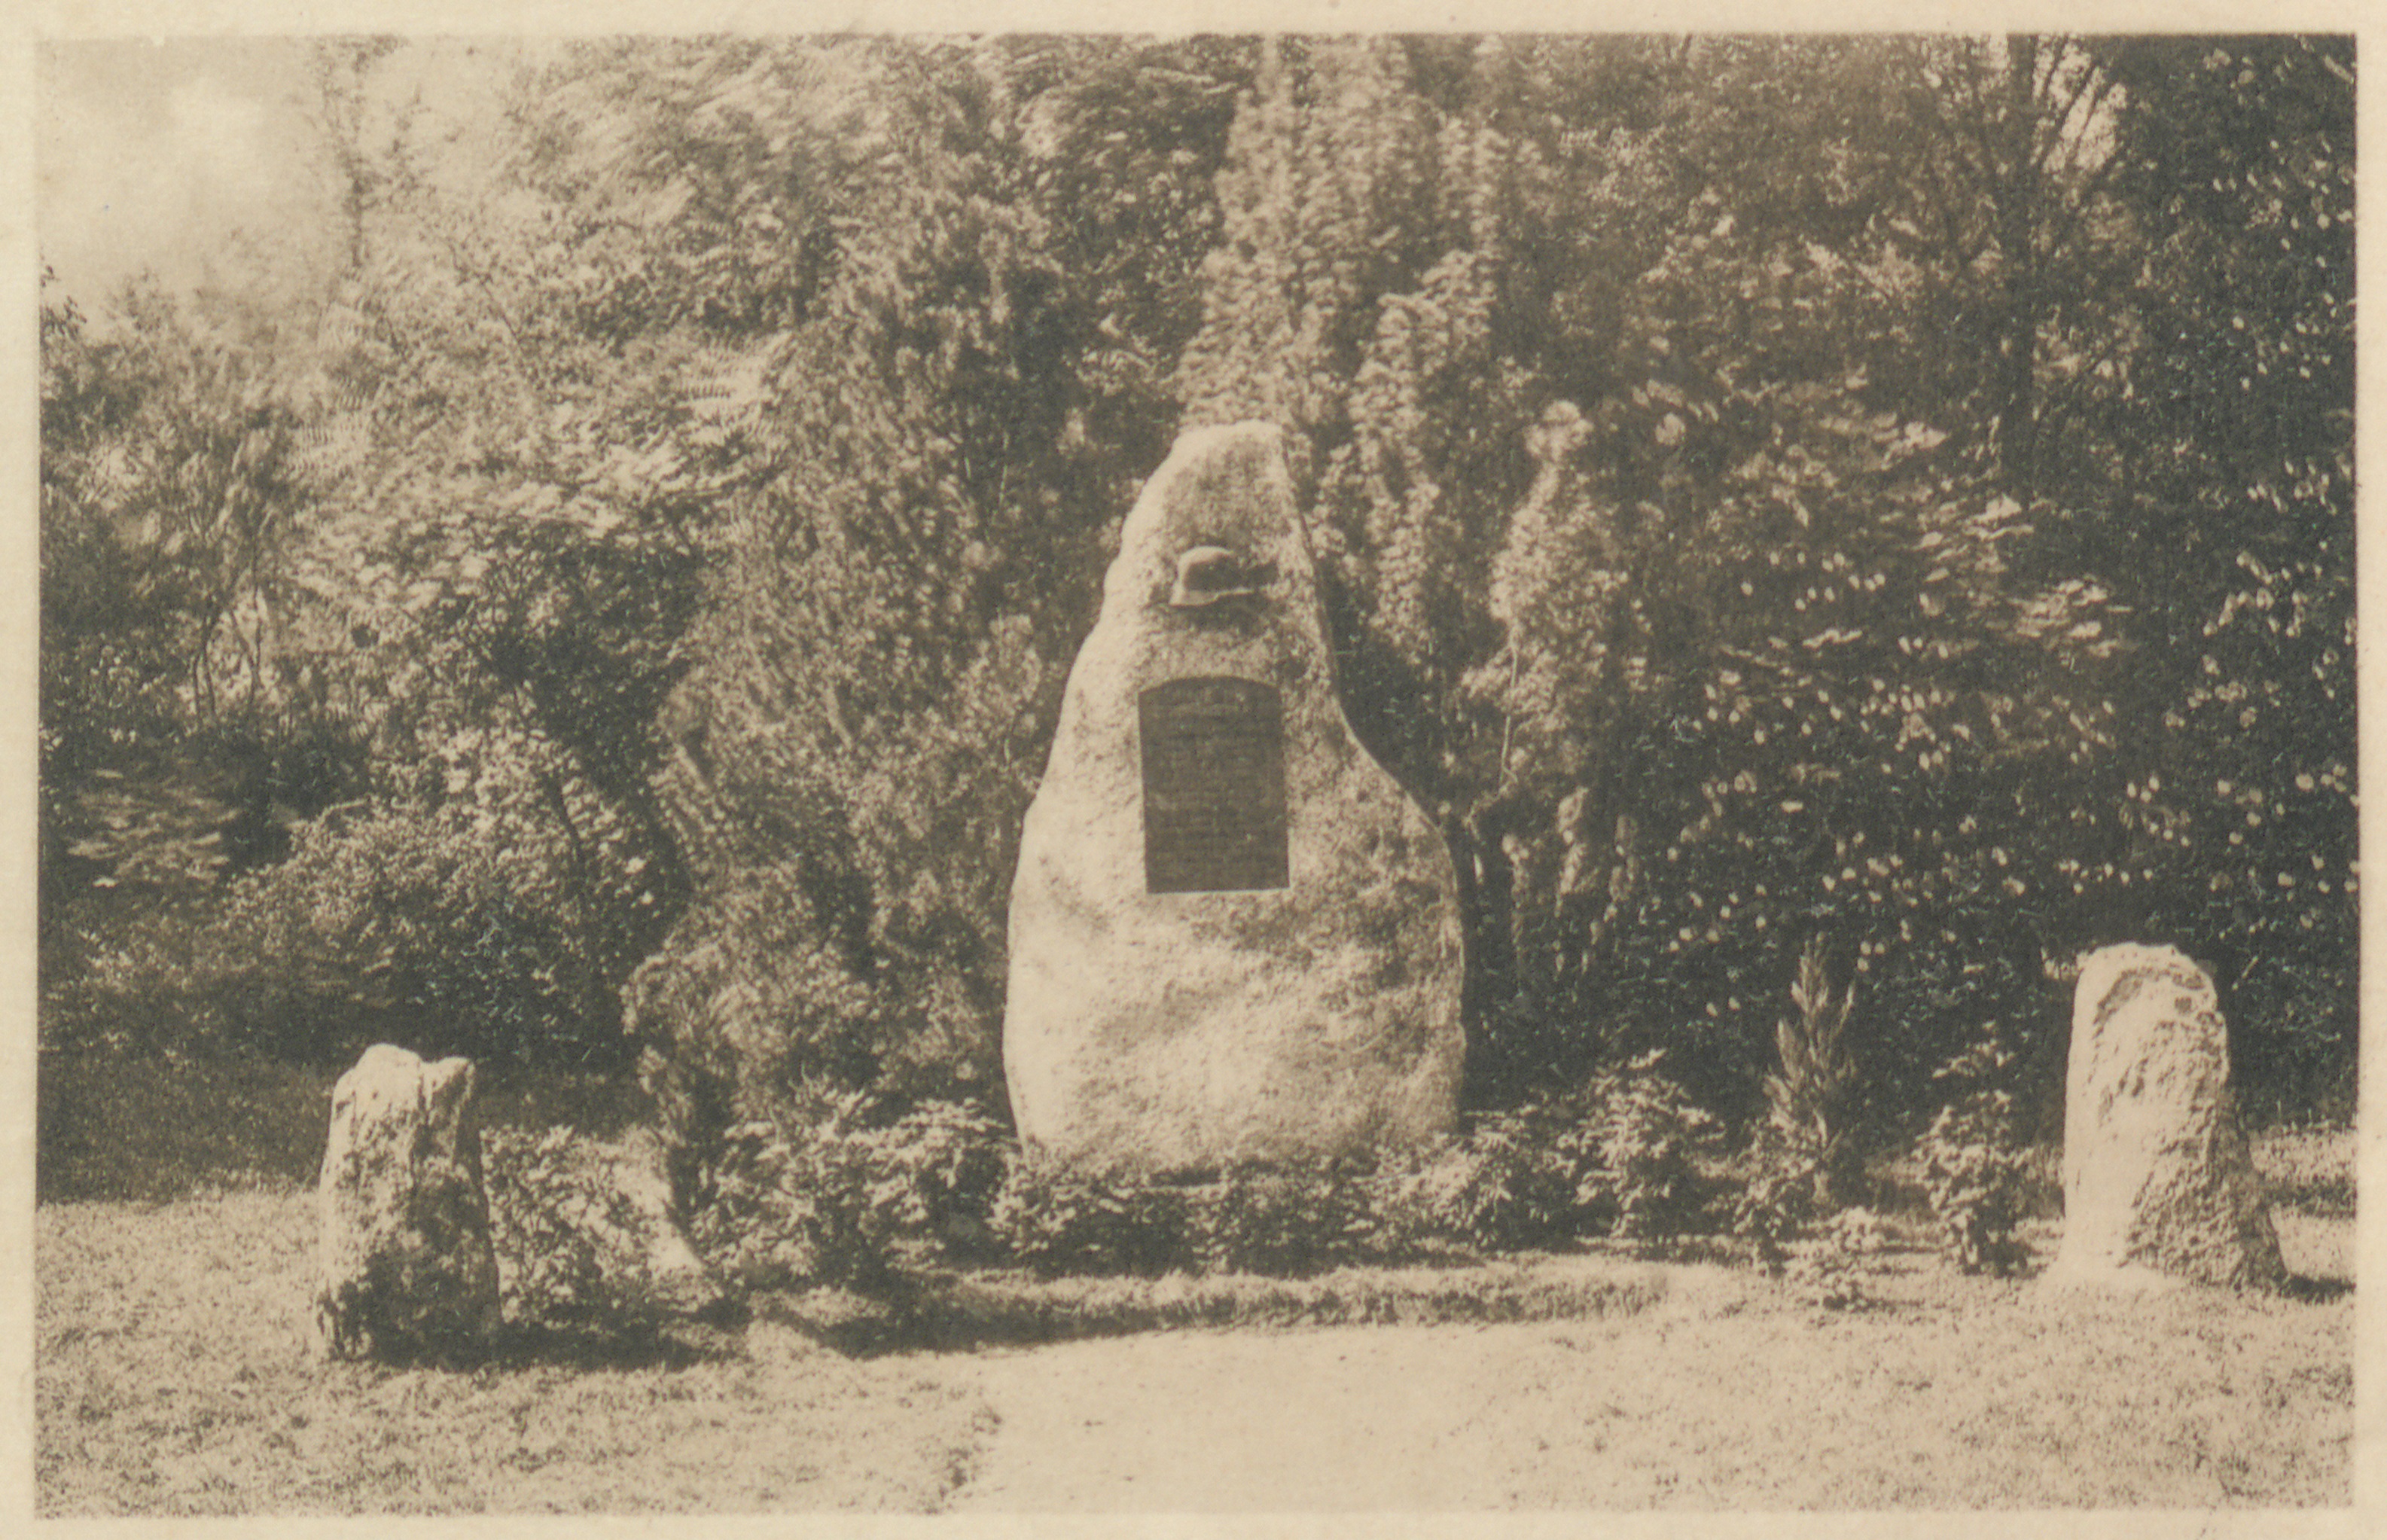  Kriegerdenkmal für das RIR 111 in Stockach 1927 (Quelle: Landesarchiv BW, GLAK F-S Postkarten 830)